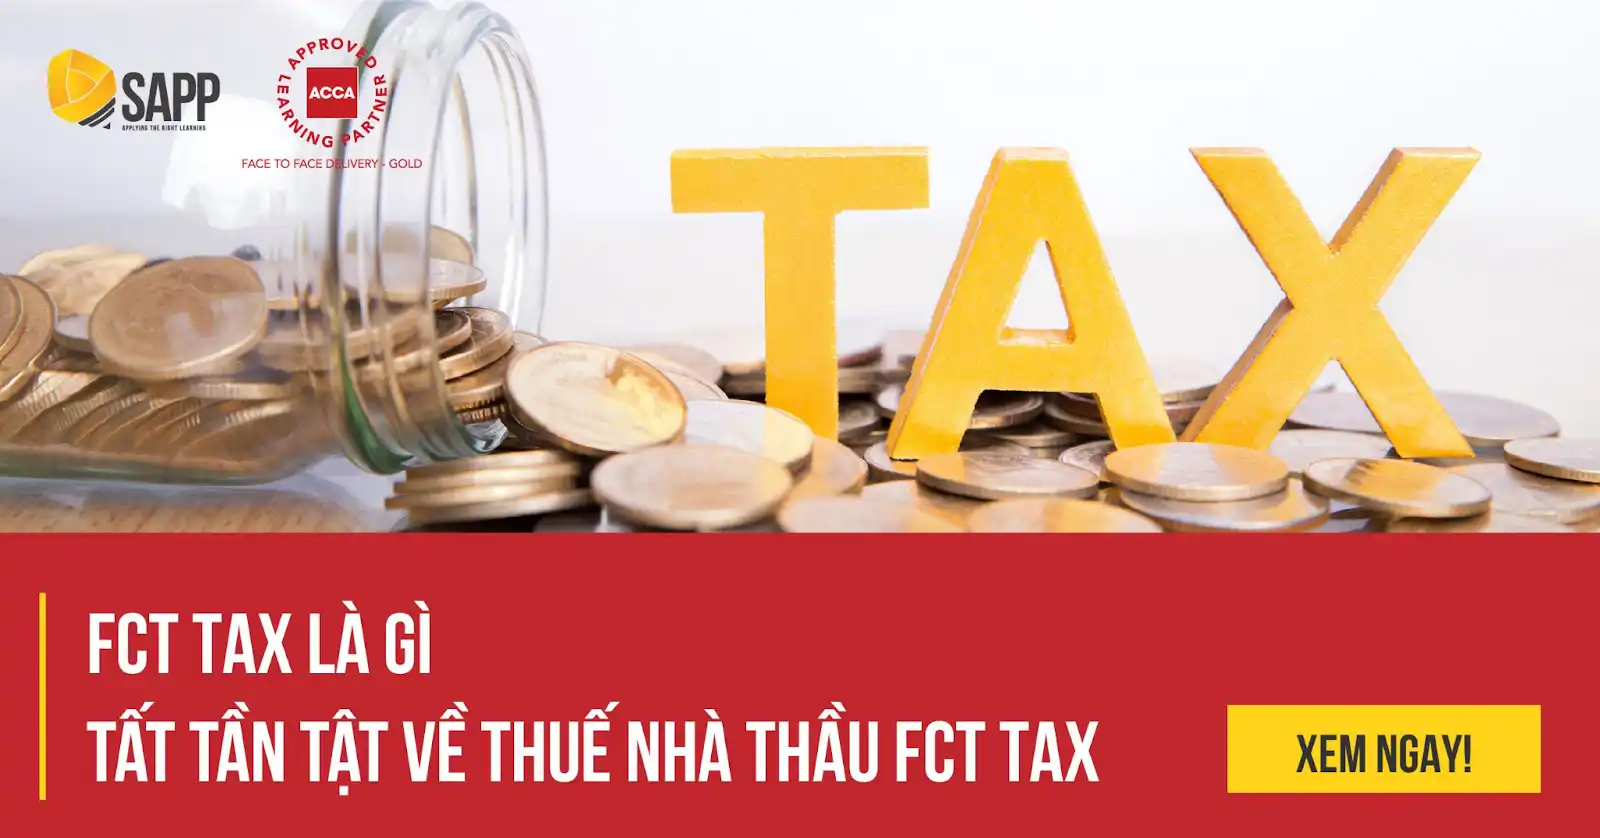 FCT Tax Là Gì - Tất Tần Tật Về Thuế Nhà Thầu FCT 